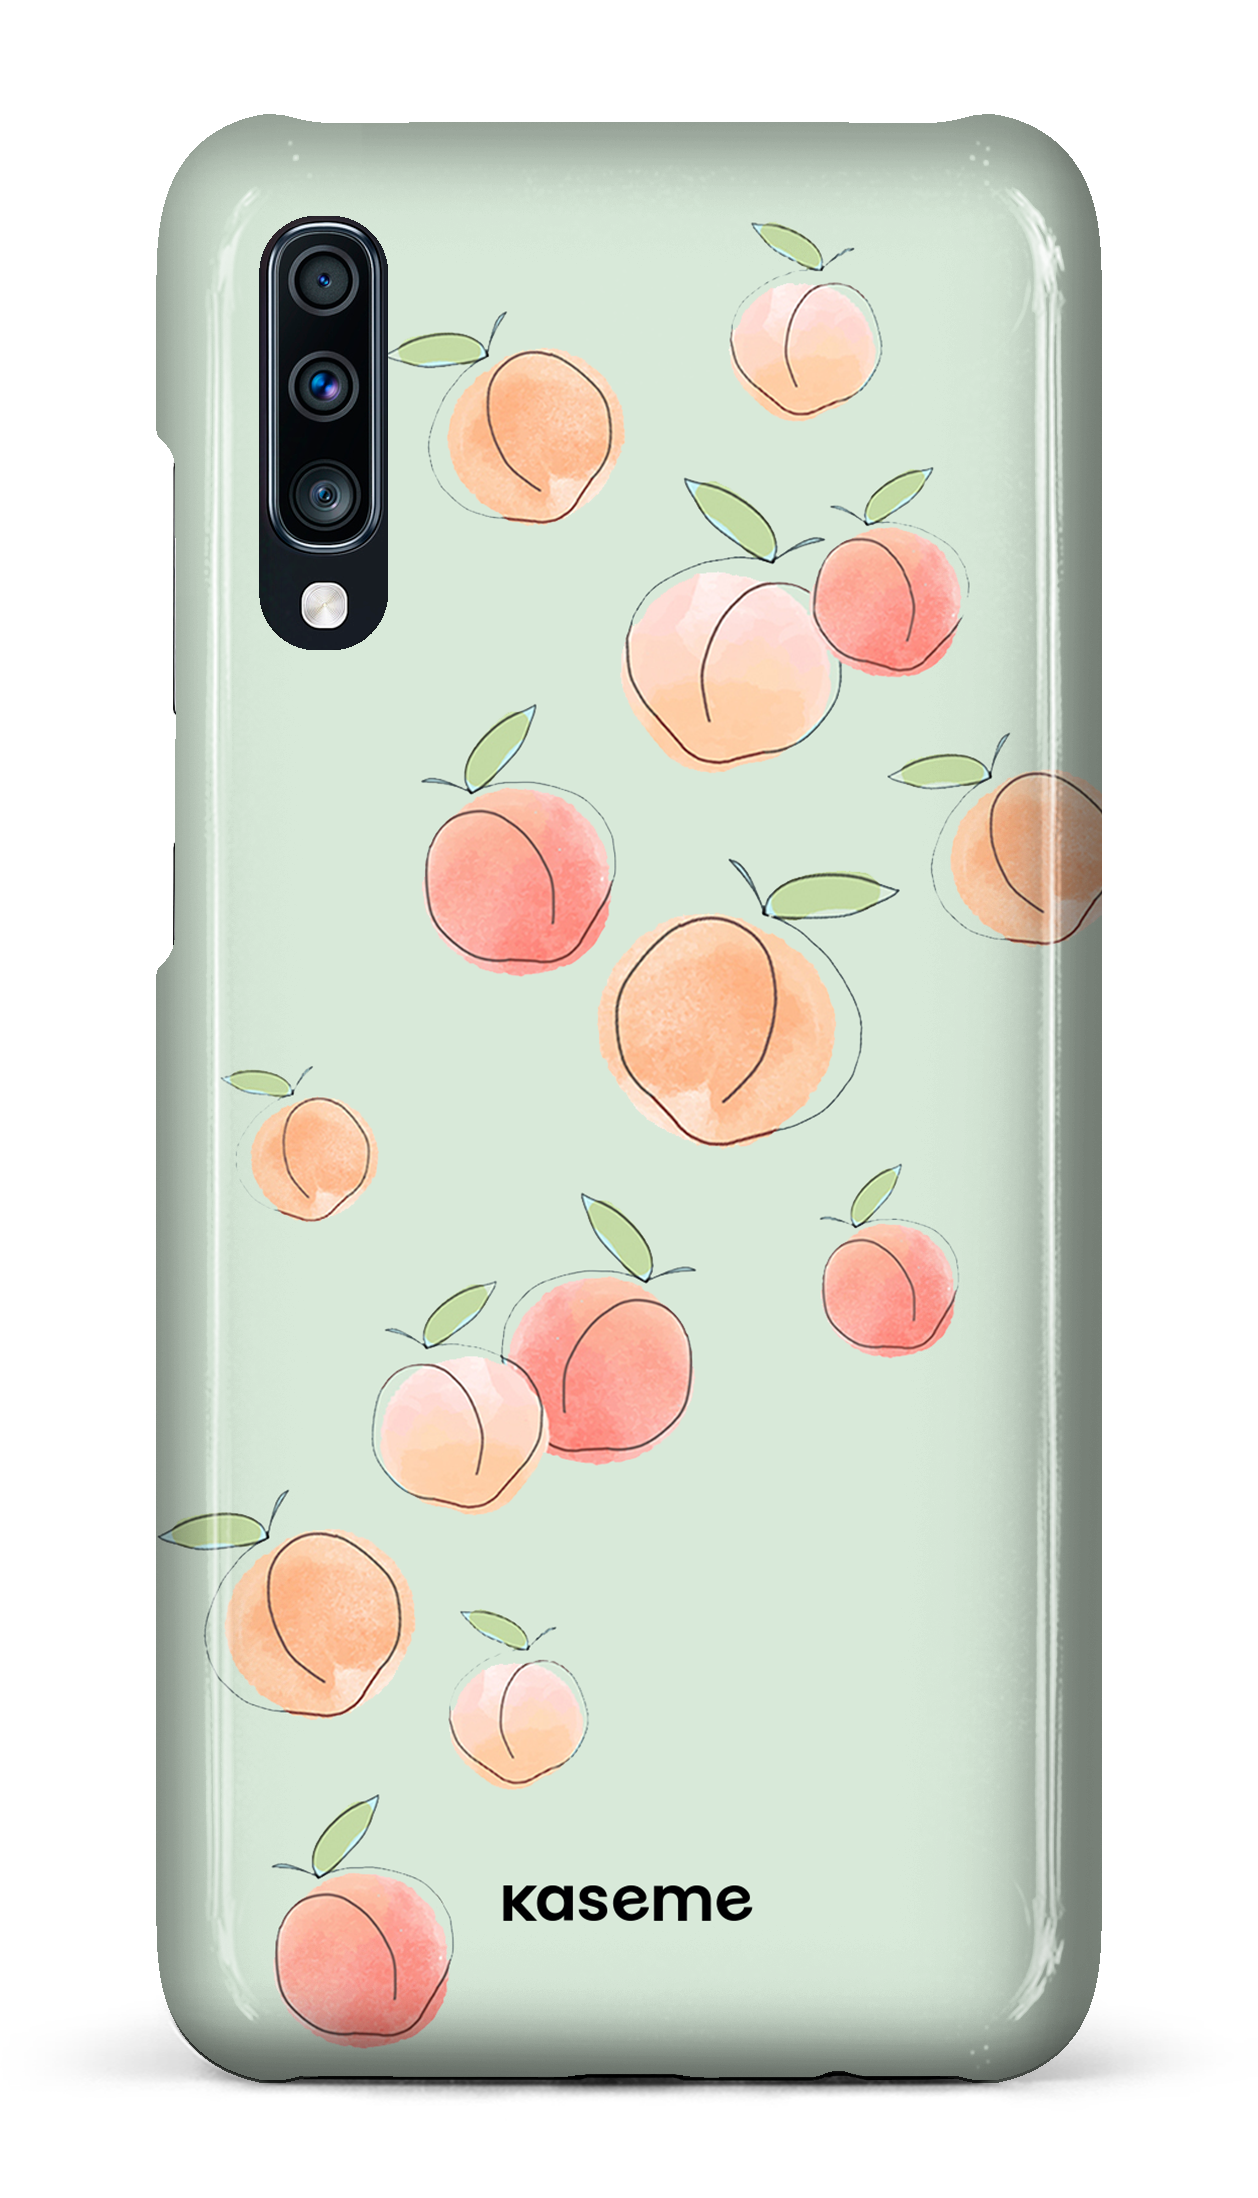 Peachy green - Galaxy A70